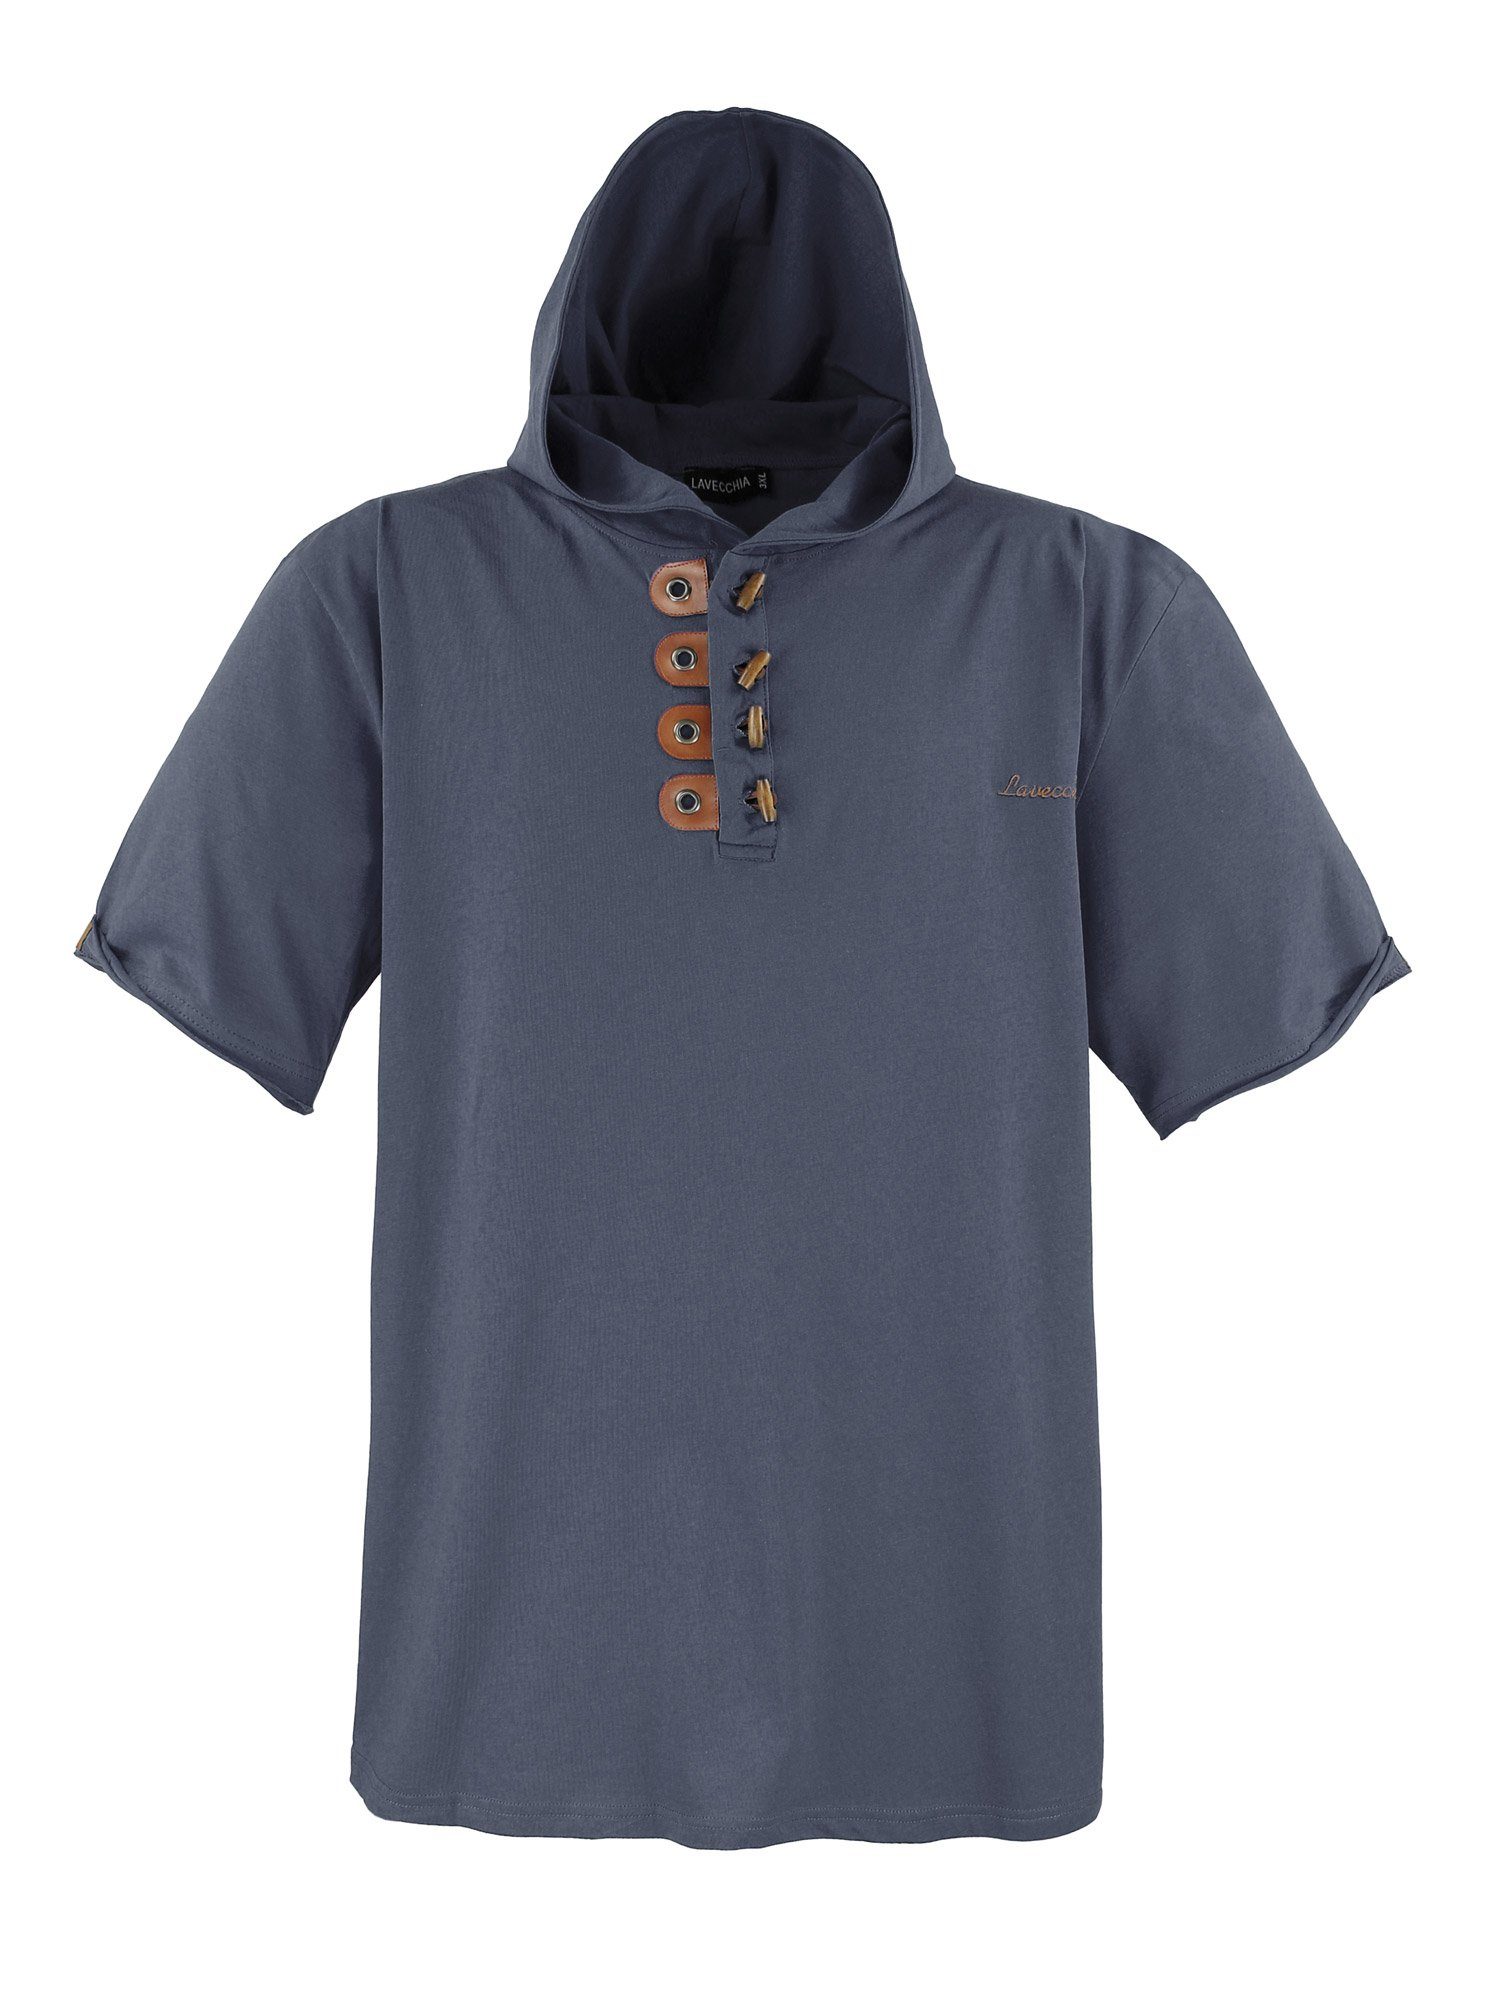 Lavecchia T-Shirt Übergrößen Herren Kapuzenshirt LV-609 Herrenshirt Kapuzen Shirt dunkelgrau